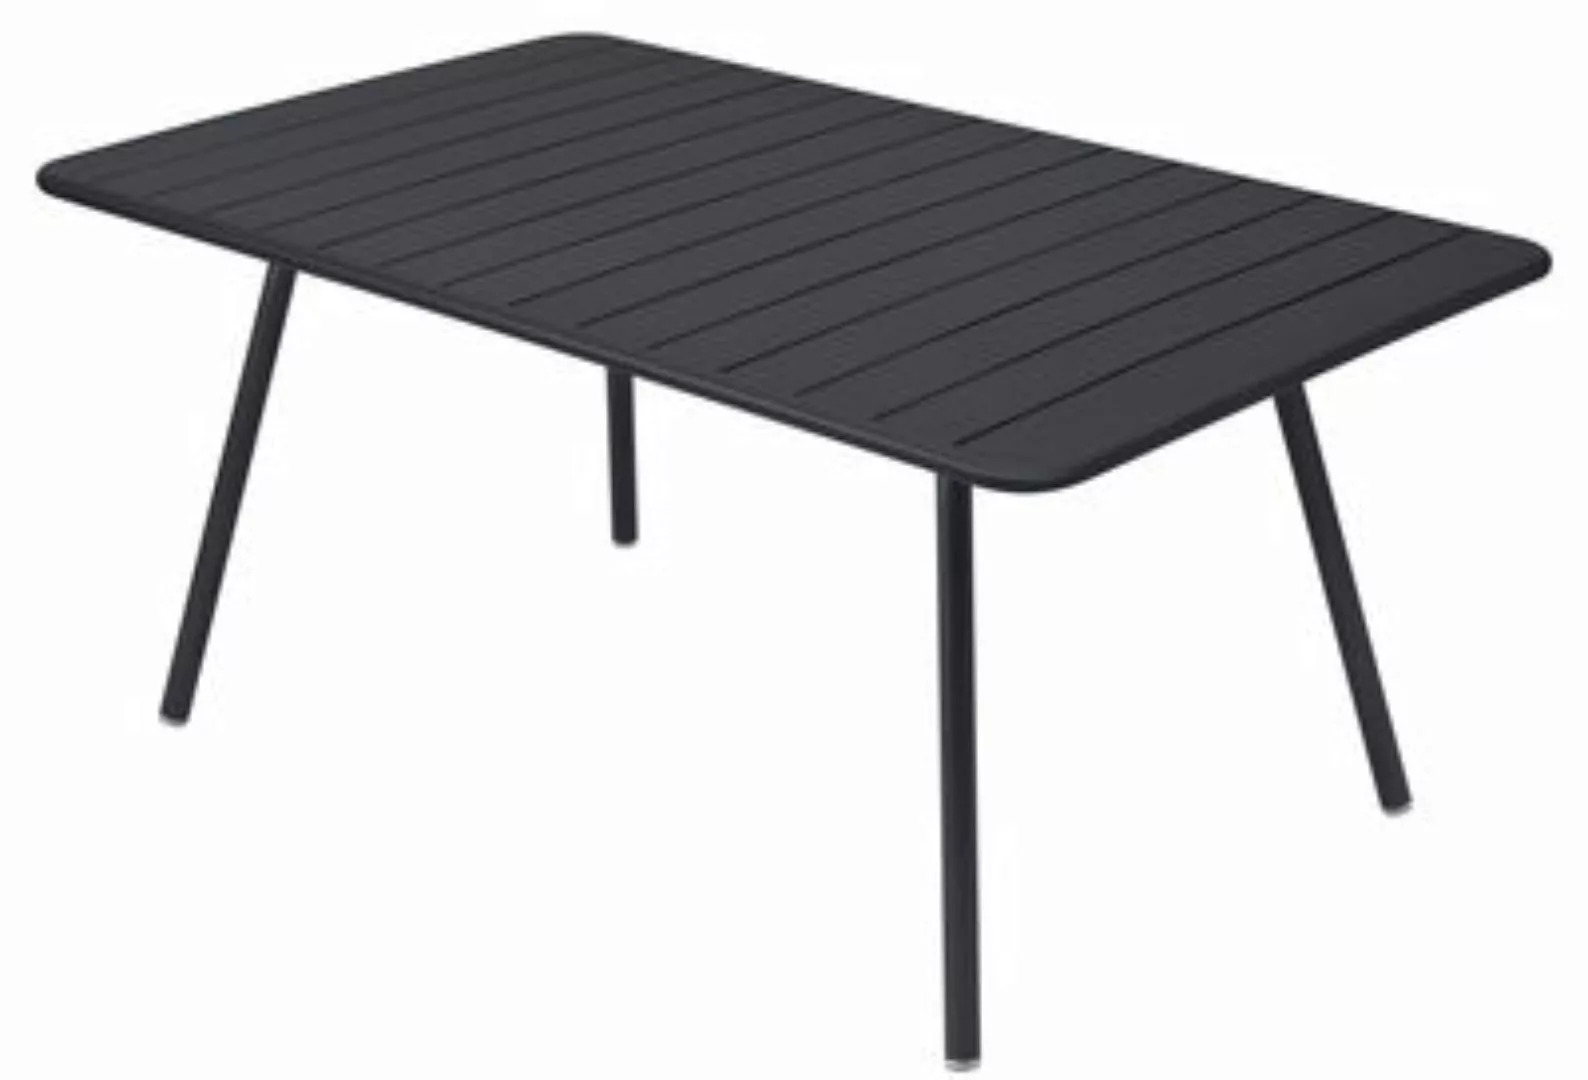 Luxembourg Outdoor-Tisch 165x100 cm Lehmgrau günstig online kaufen